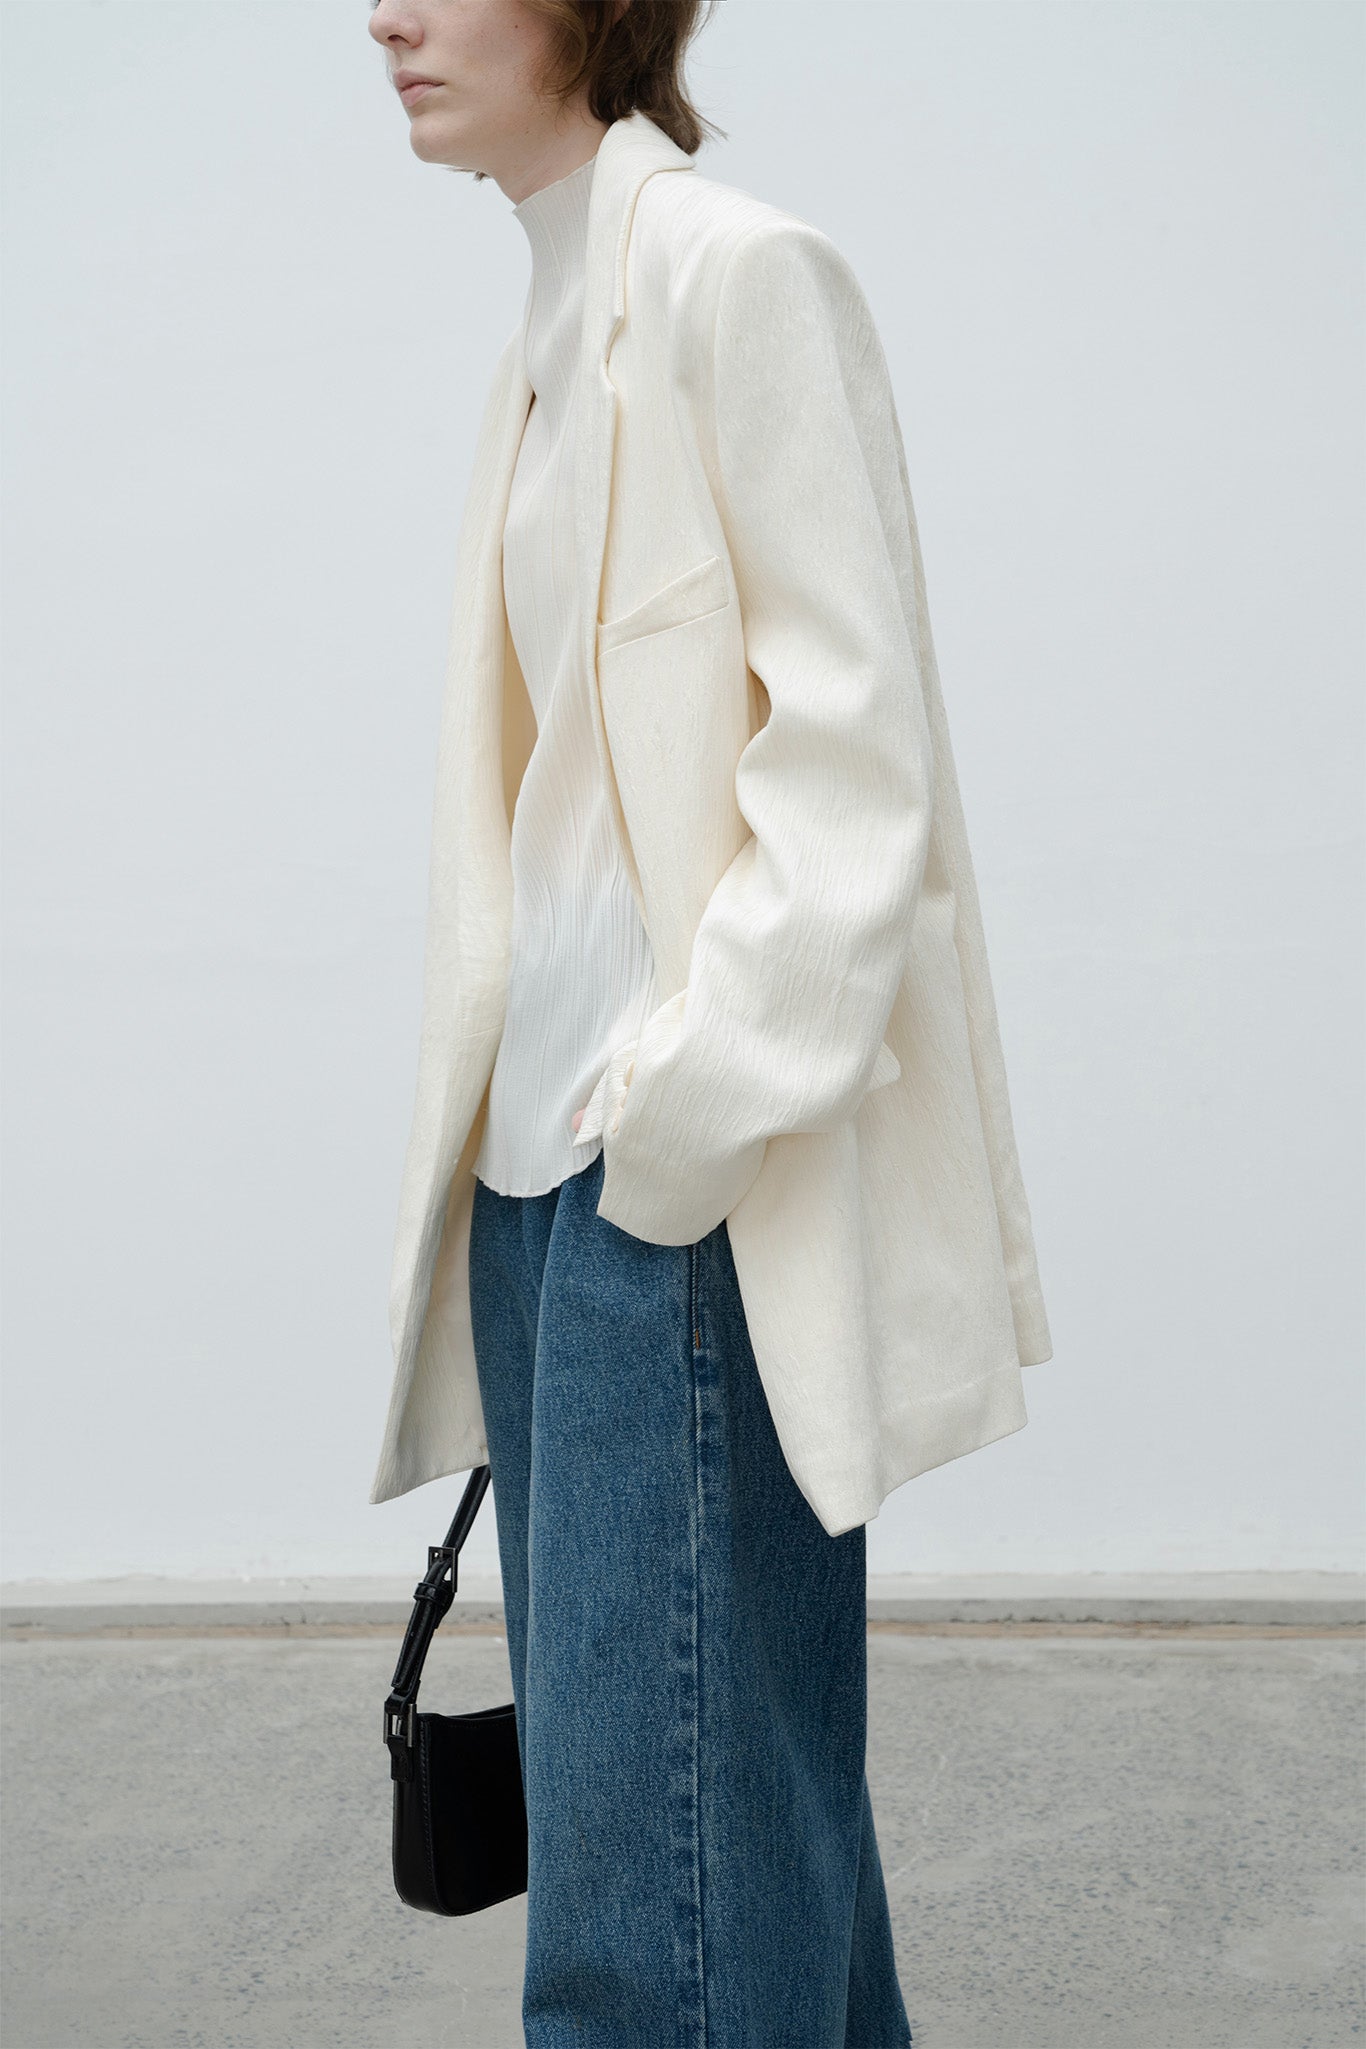 Yangliu style single jacket 